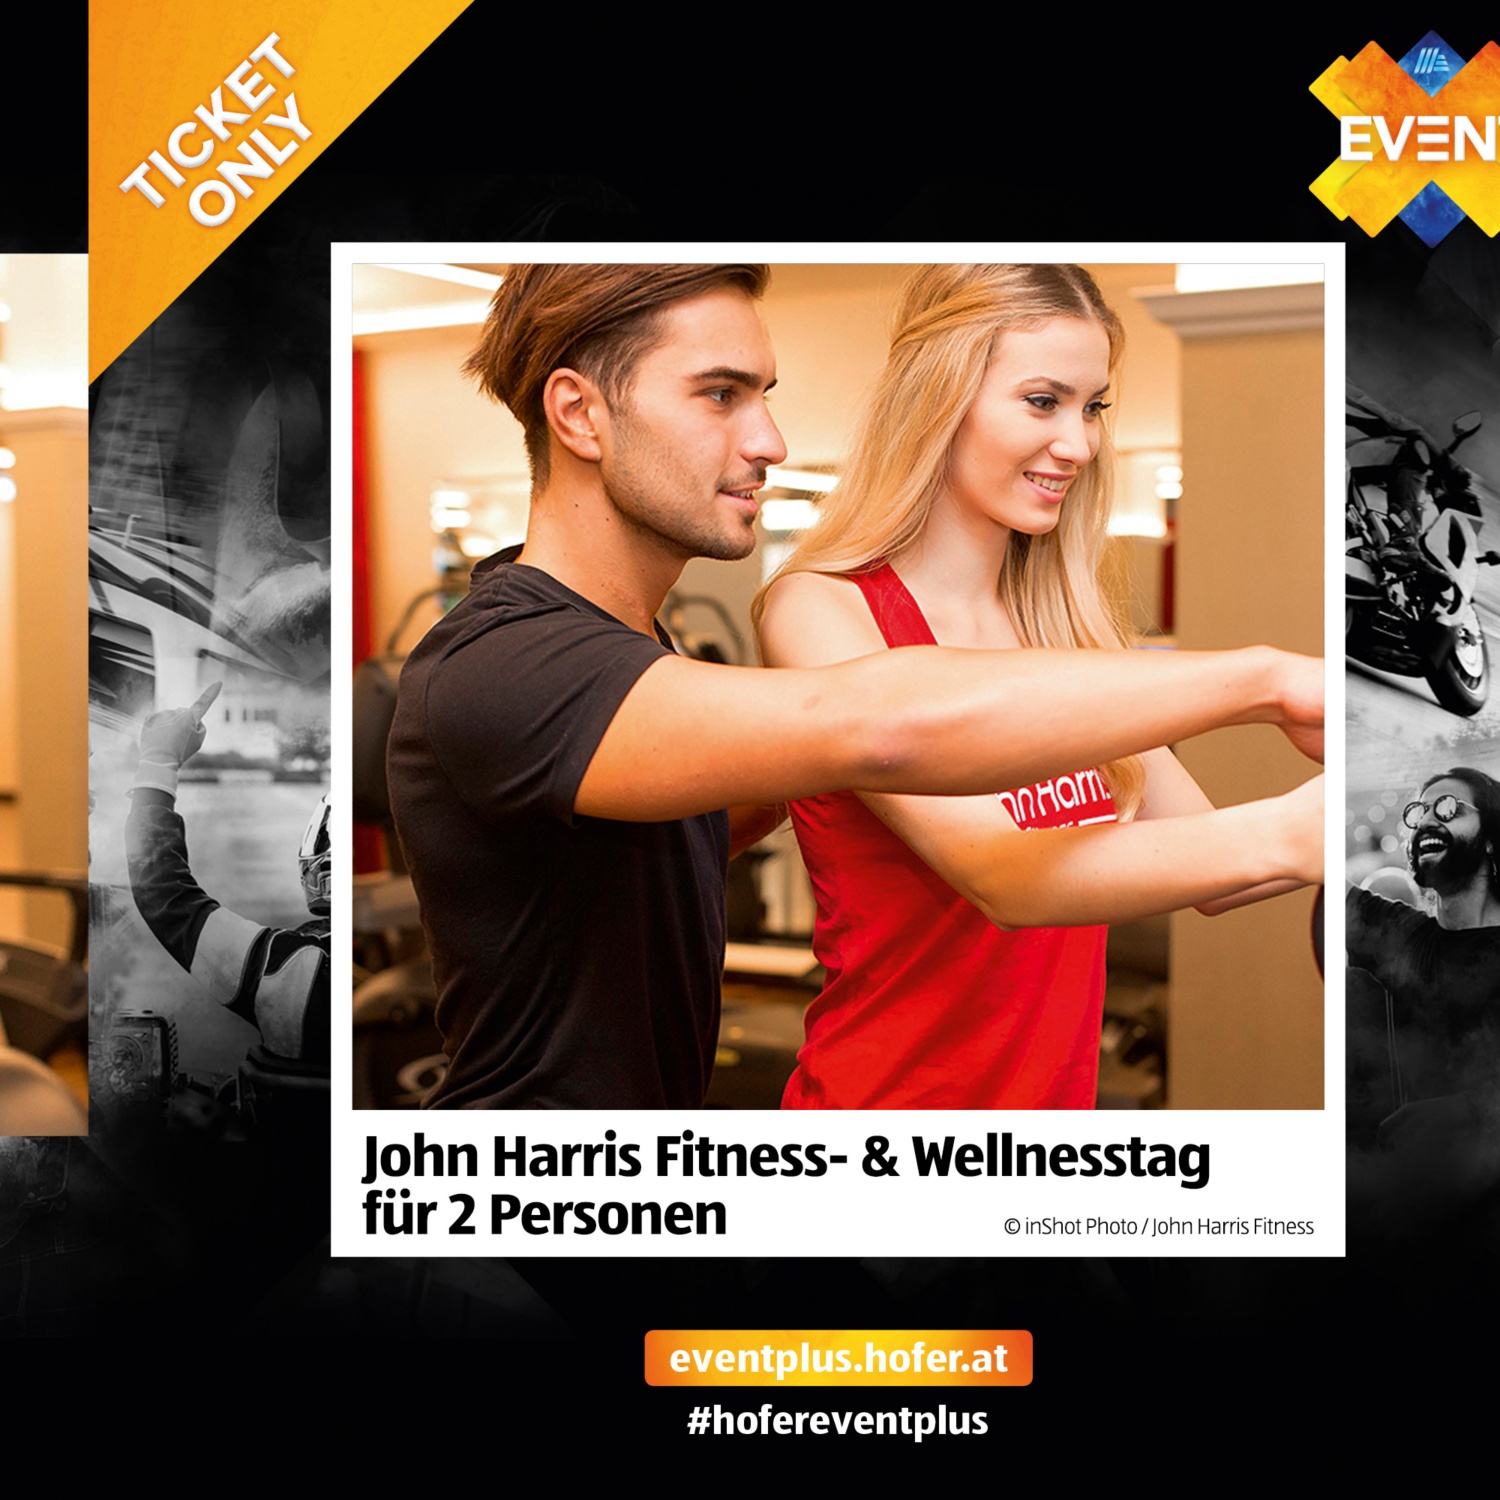 John Harris Fitness- & Wellnesstag für 2 Personen